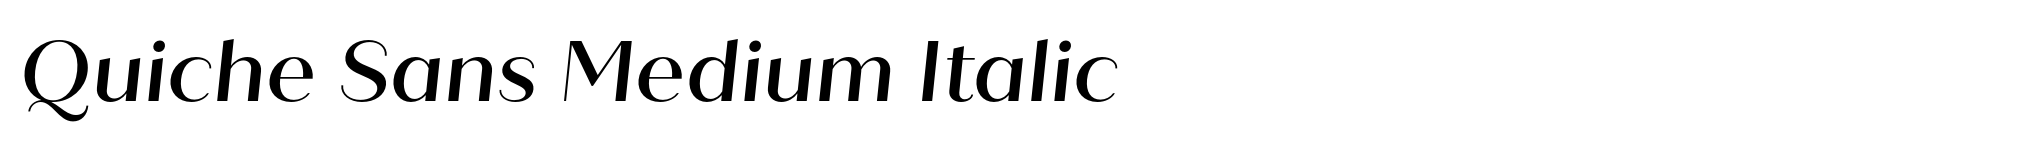 Quiche Sans Medium Italic image